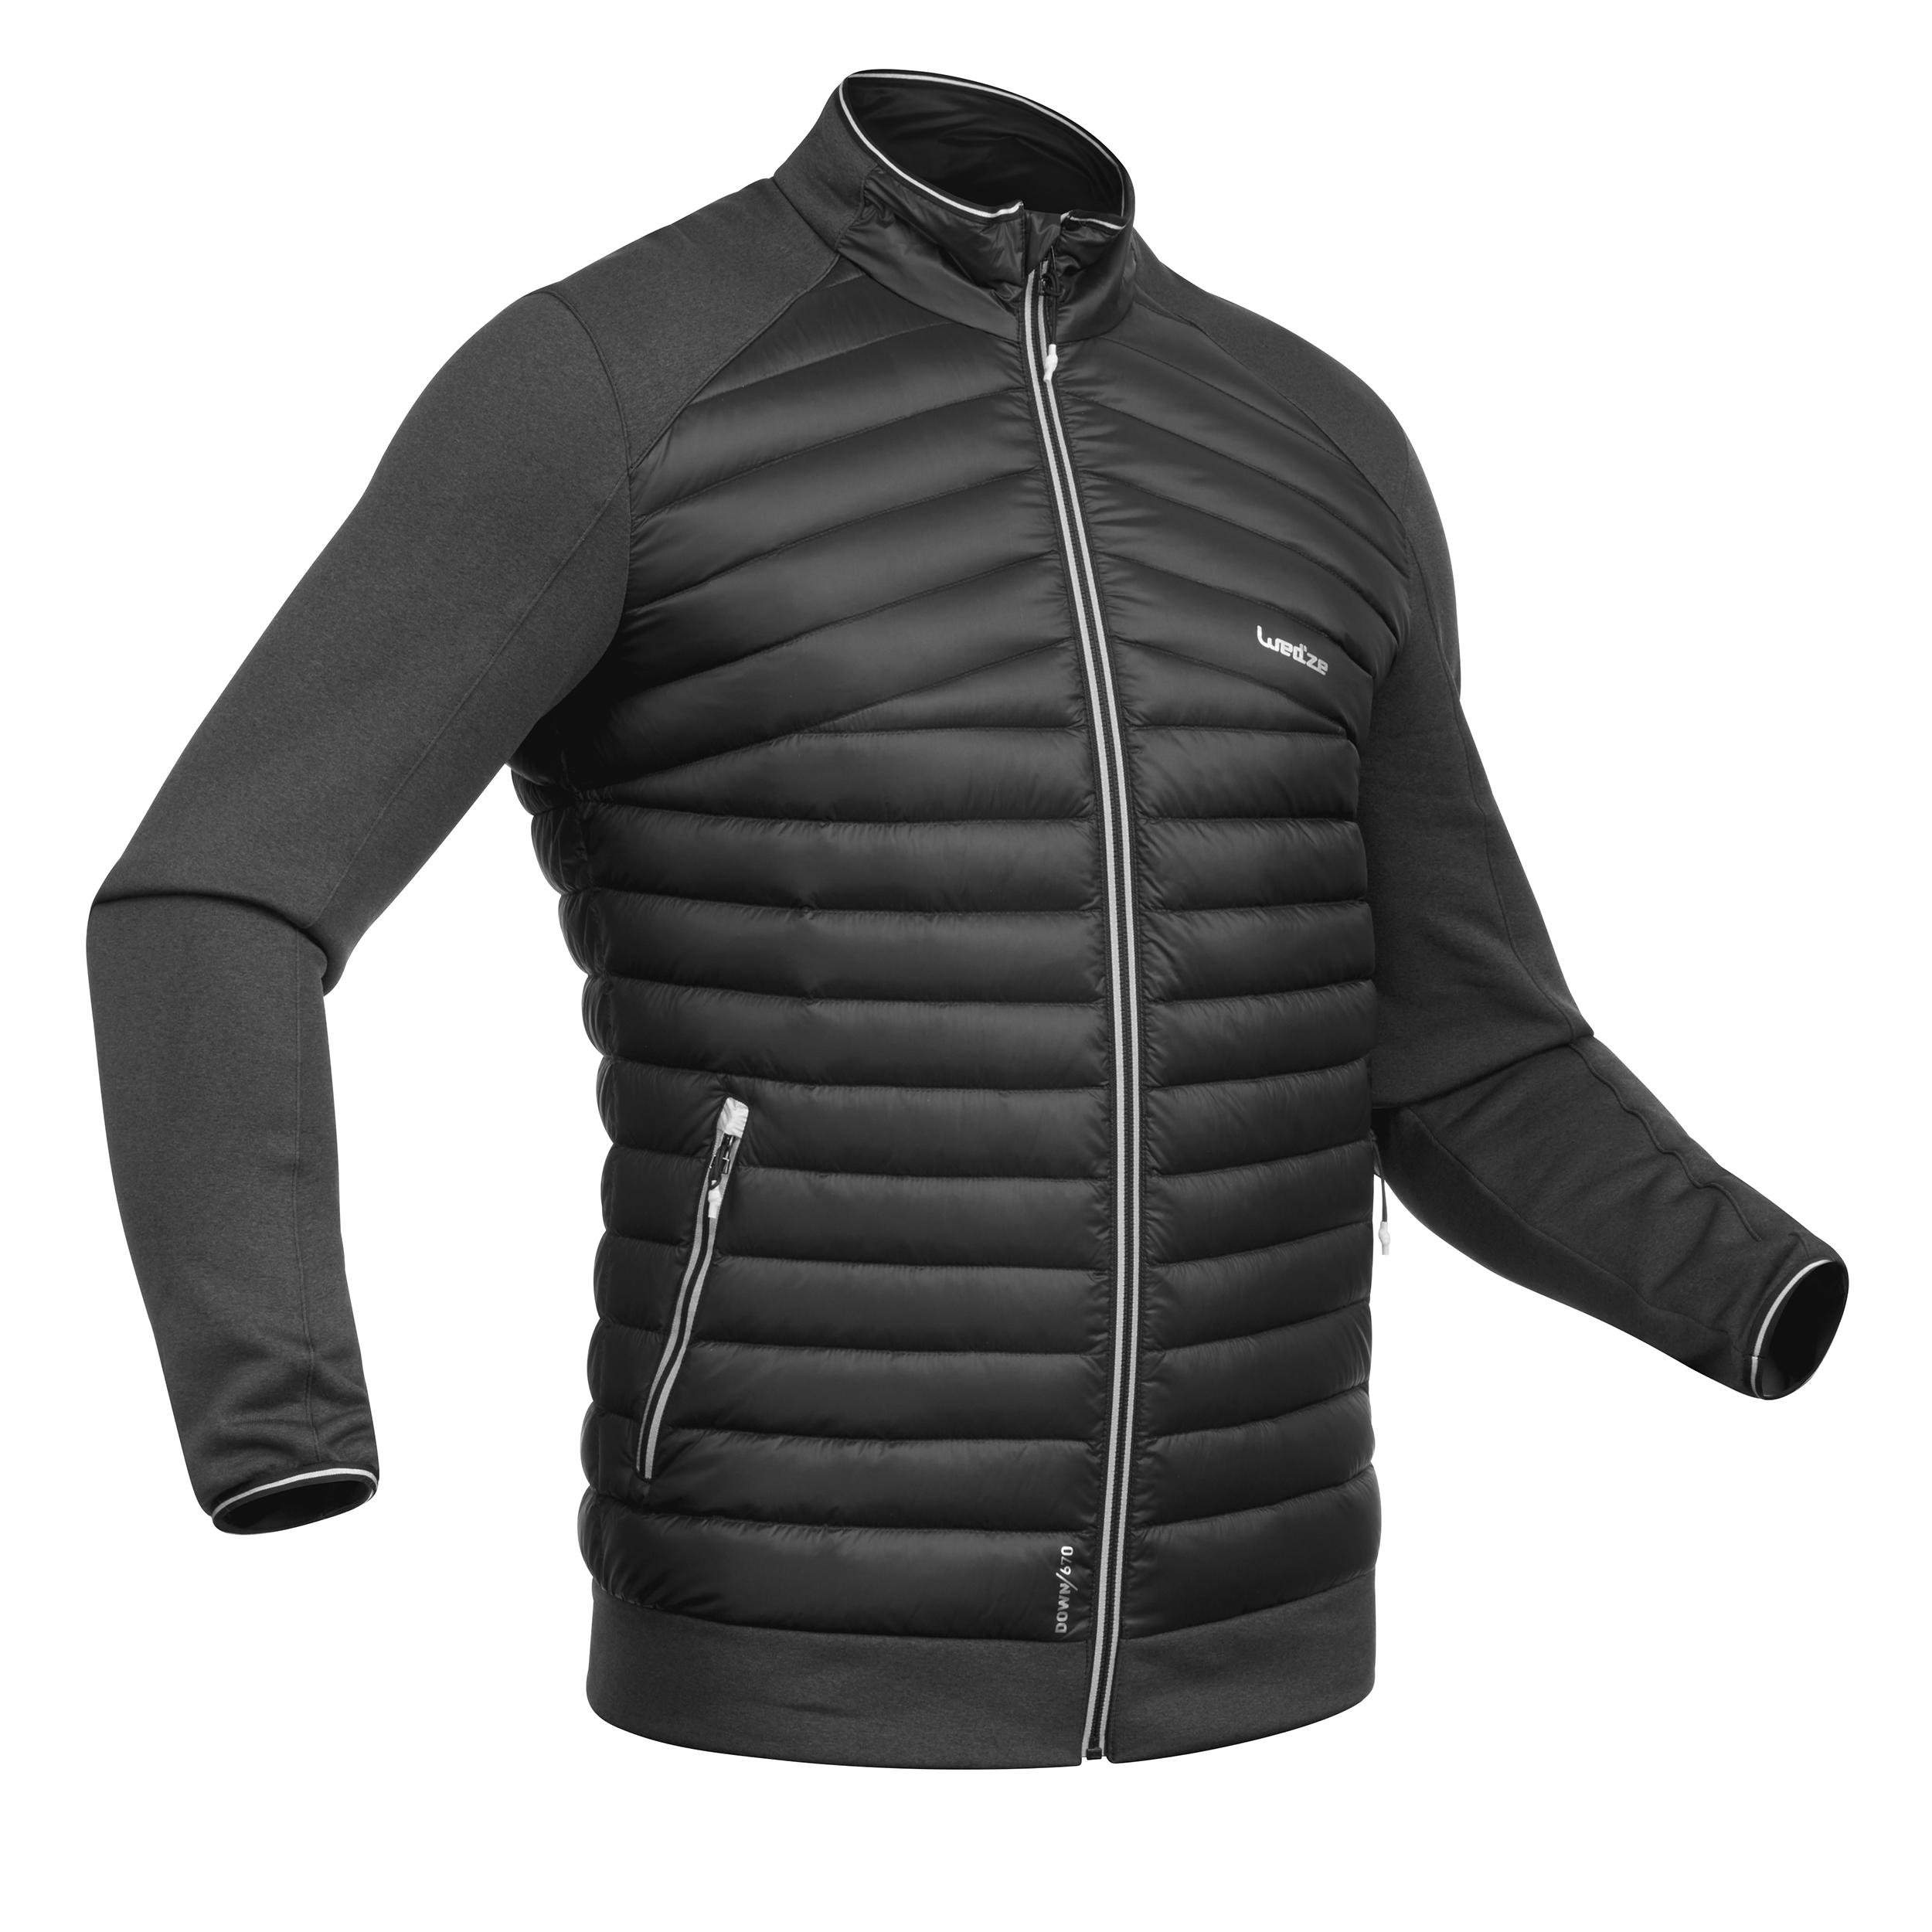 Manteau léger de ski homme - 900 noir - WEDZE